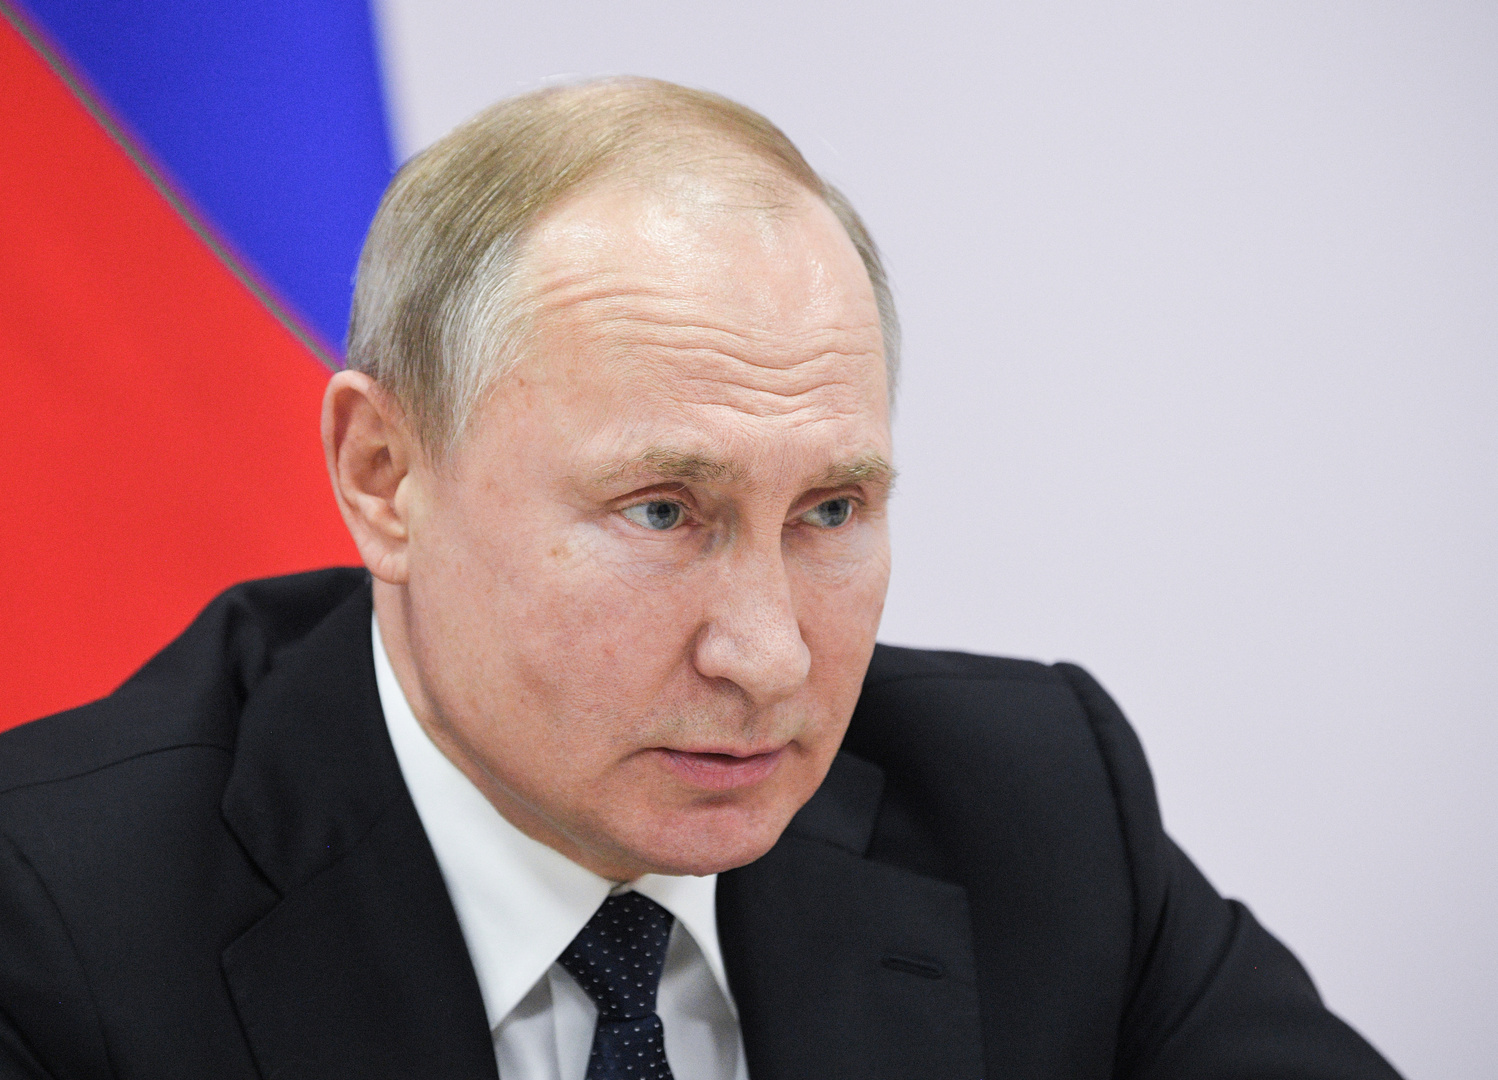 بوتين يهنئ الدبلوماسيين الروس ويشيد بدورهم في الدفاع عن مصالح روسيا